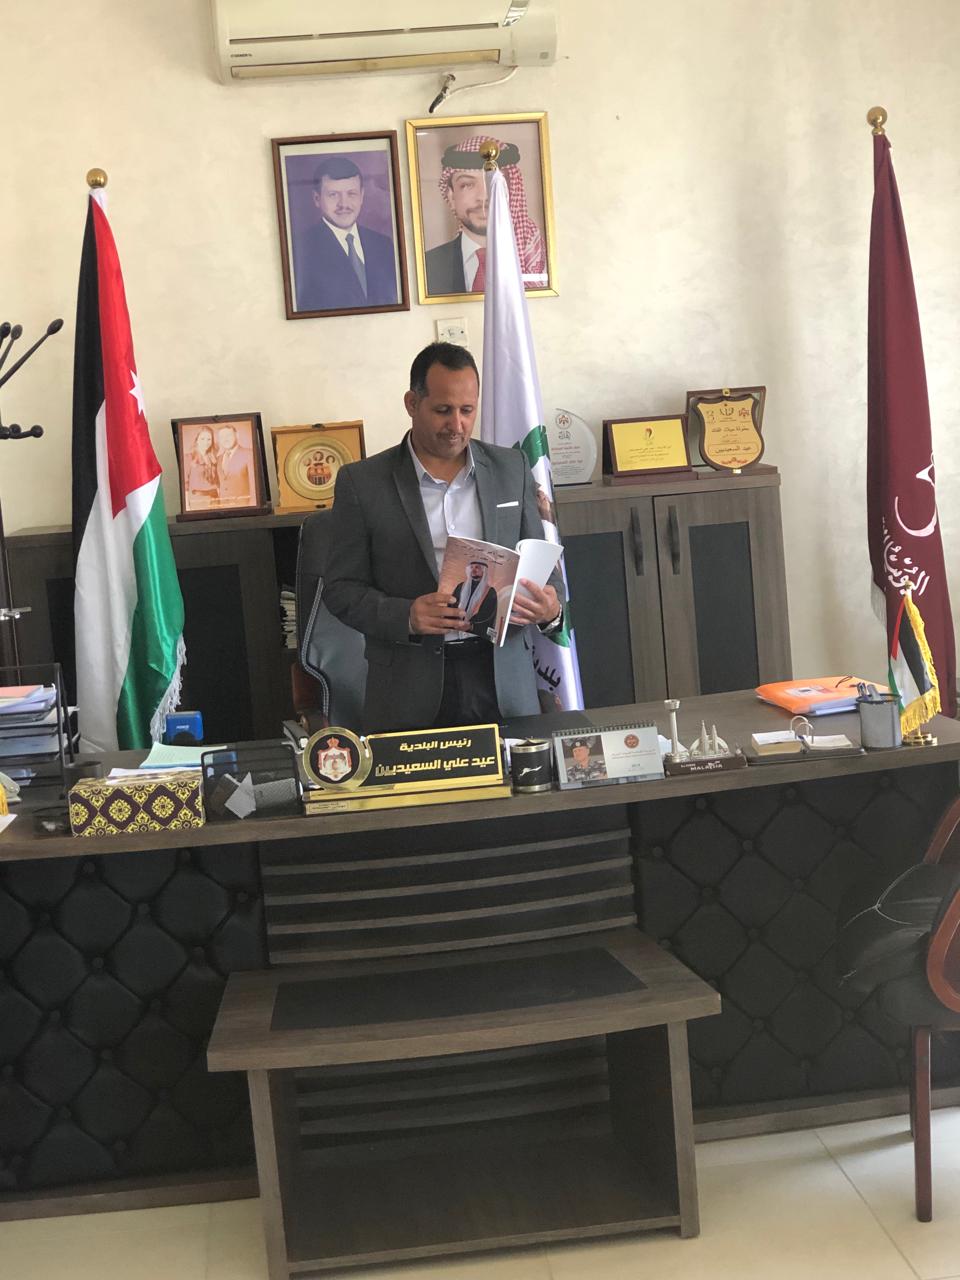 رئيس بلدية قريقرة وفينان السعيديين  يتسلّم نسخة من كتاب ( ولي العهد الأمير الحسين ،مستقبل شعب وأمل أمة ) الذي اصدرتة القلعة نيوز